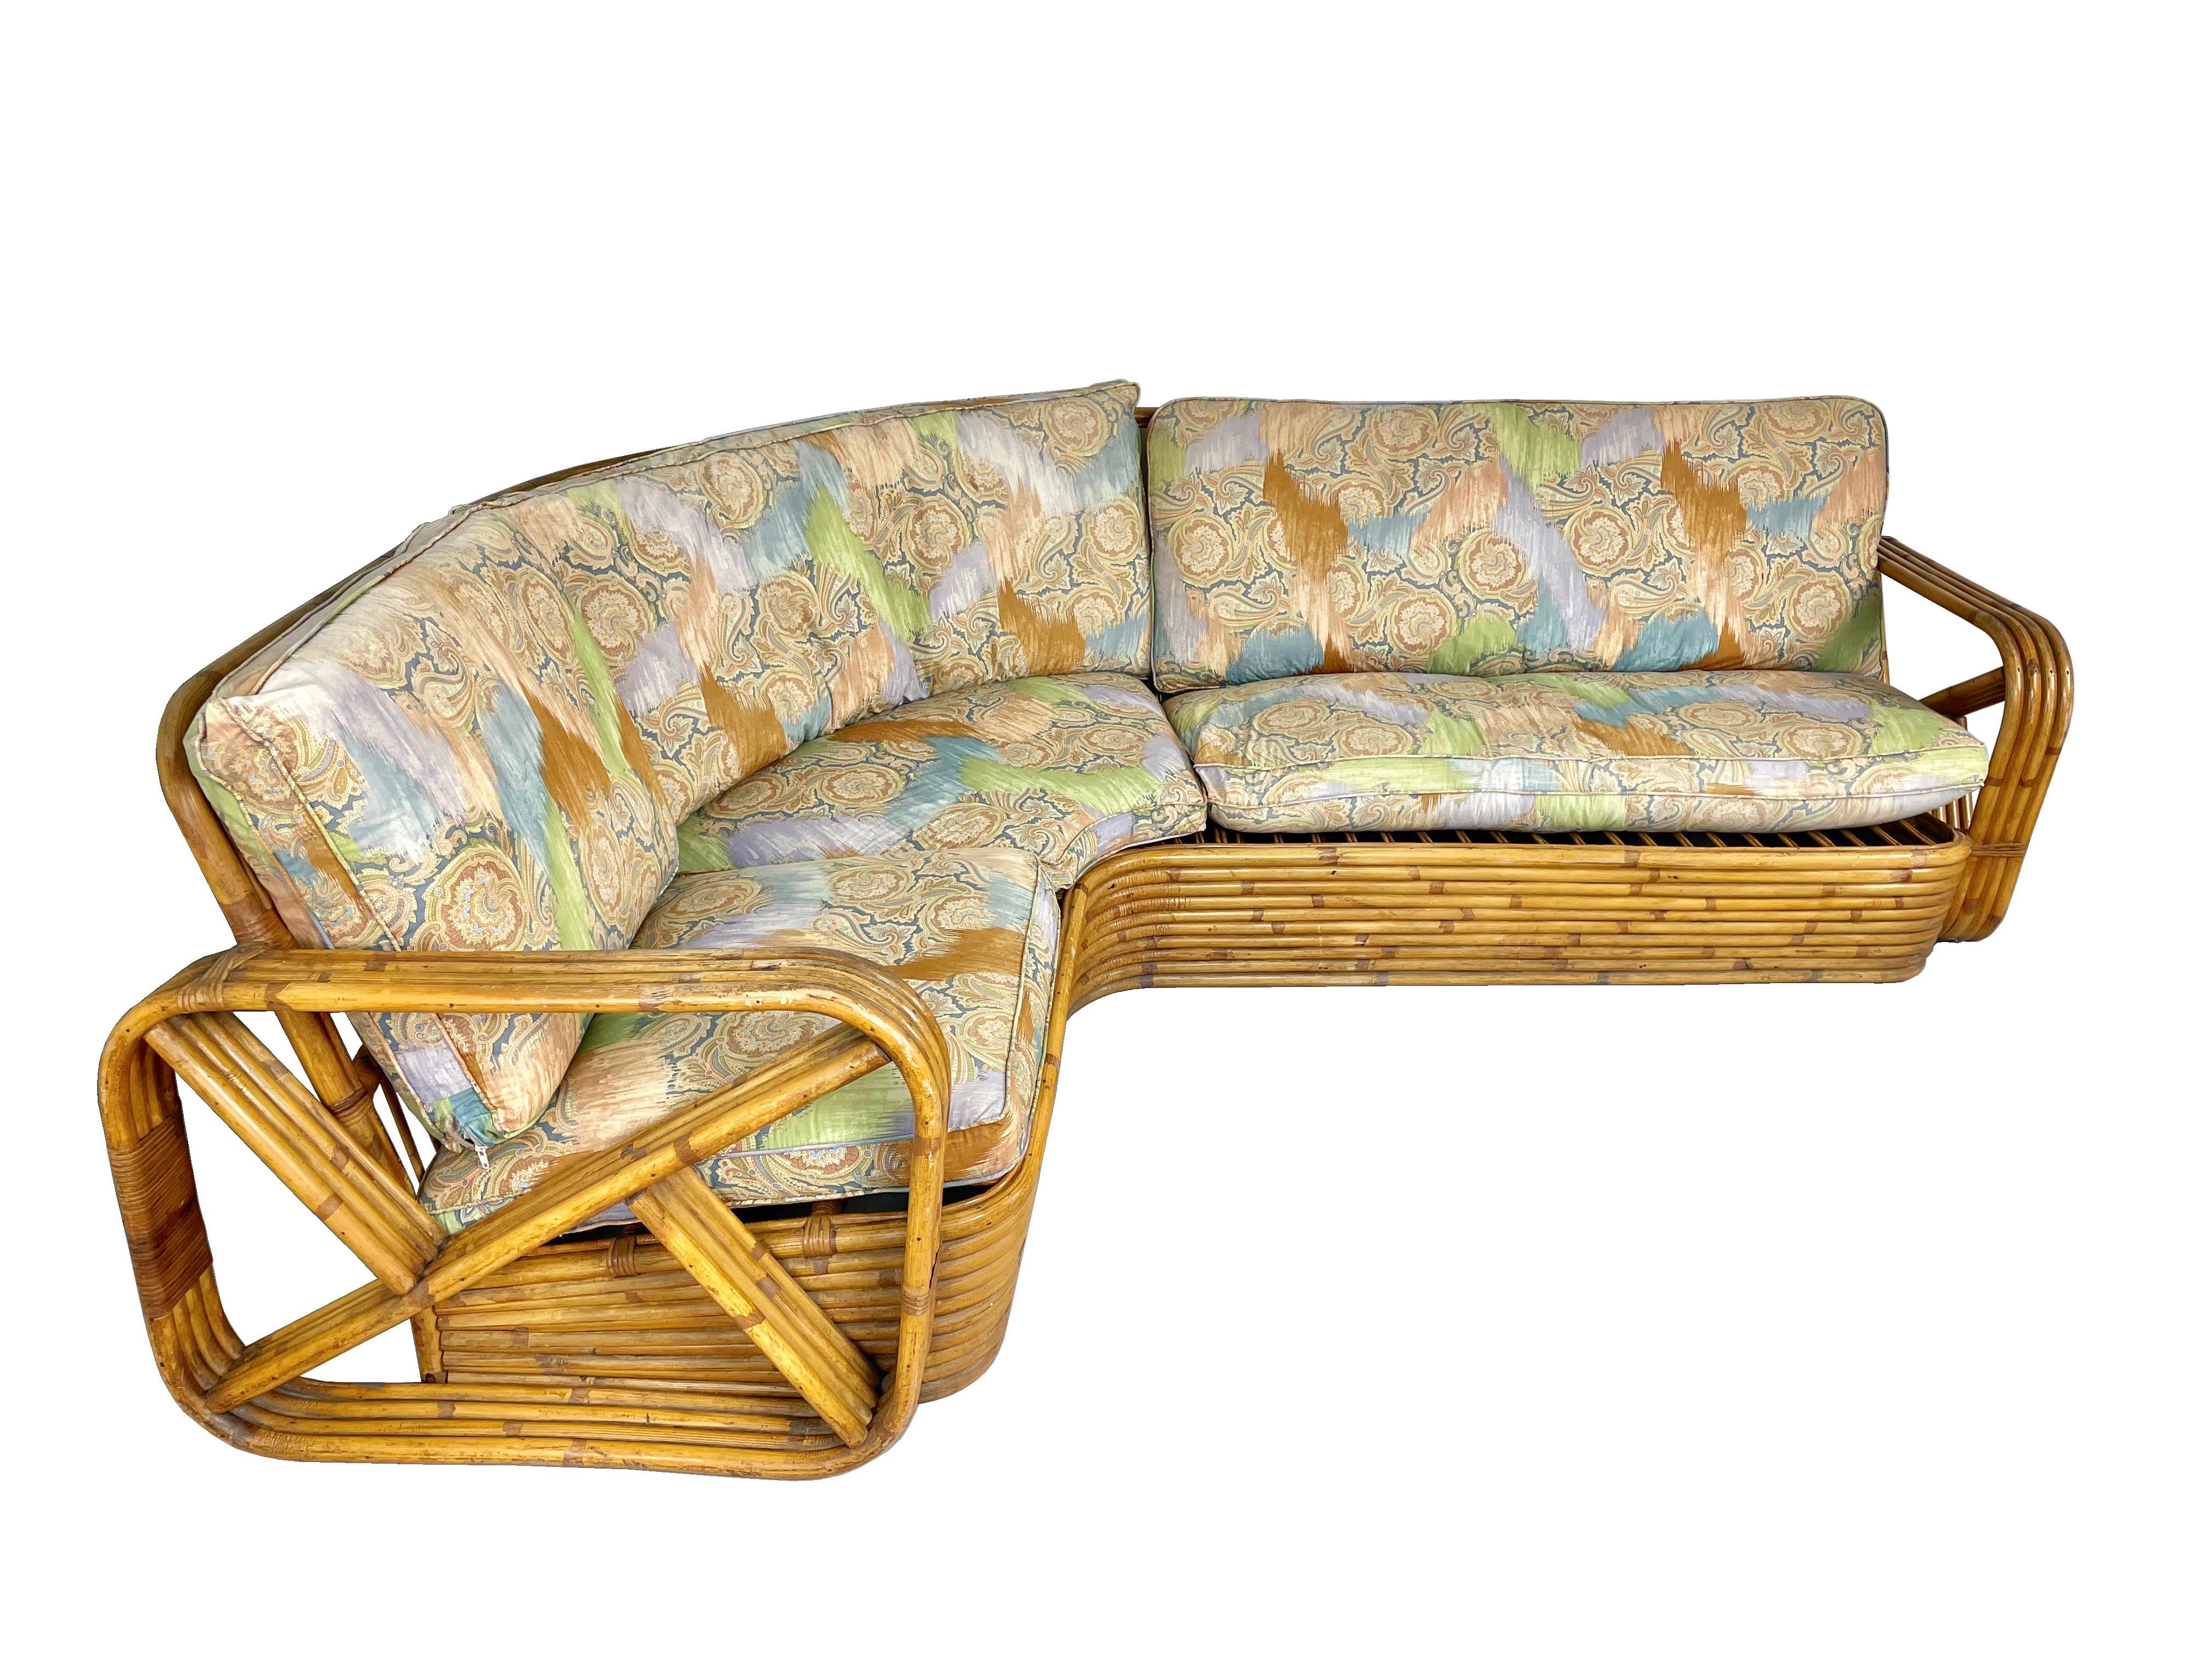 Brezel-Ecksofa aus Rattan, entworfen nach dem Vorbild von Paul Frankl. Dieses einzigartige Sofa besteht aus einem gebogenen Rattansockel mit viersträngigen, quadratischen Brezelarmen und ist ein solides, gebogenes Rattanstück. 

Die Kissen können